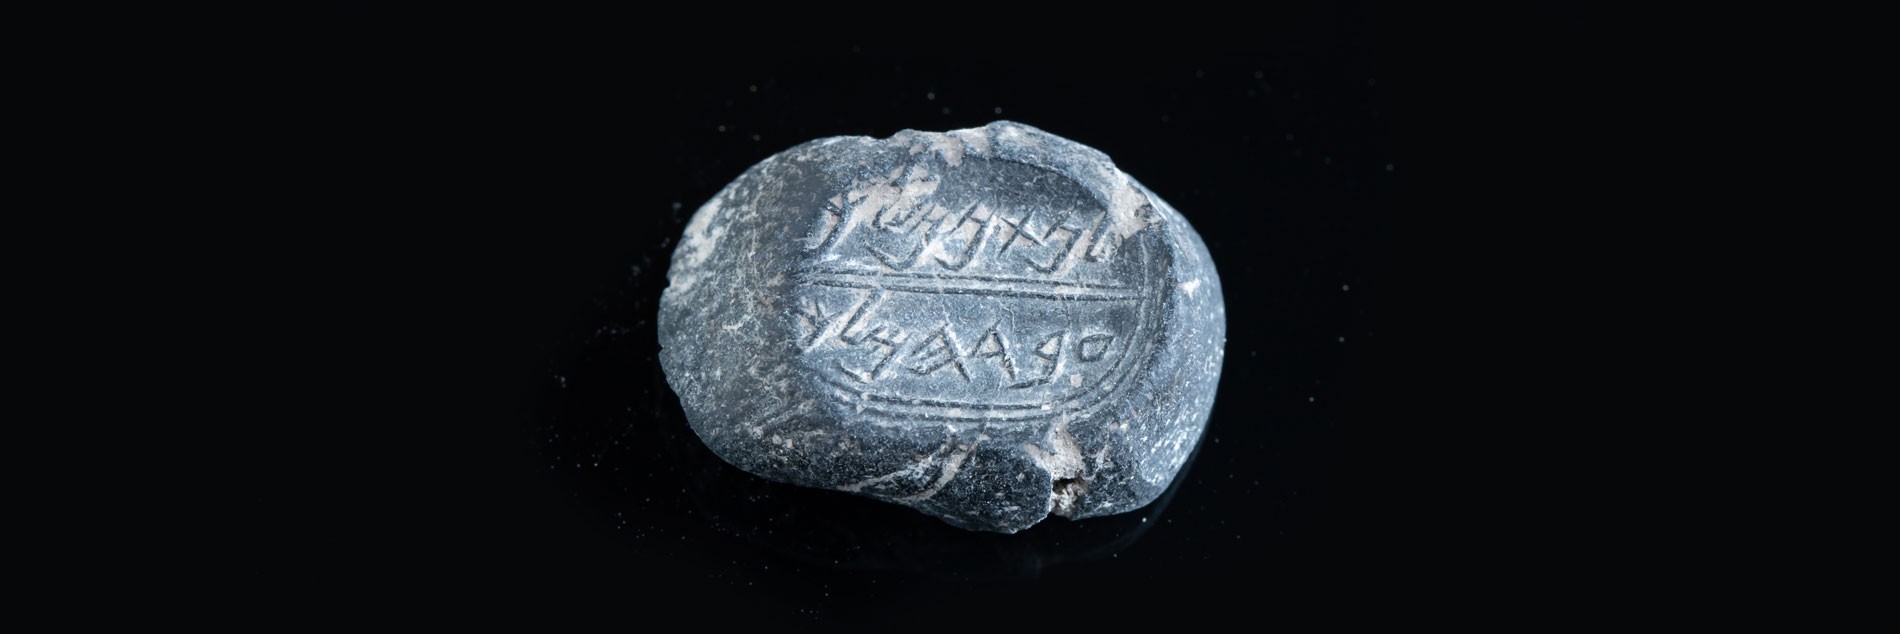 טביעת חותם נושאת שם המופיע בתנ"ך התגלתה בעיר דוד